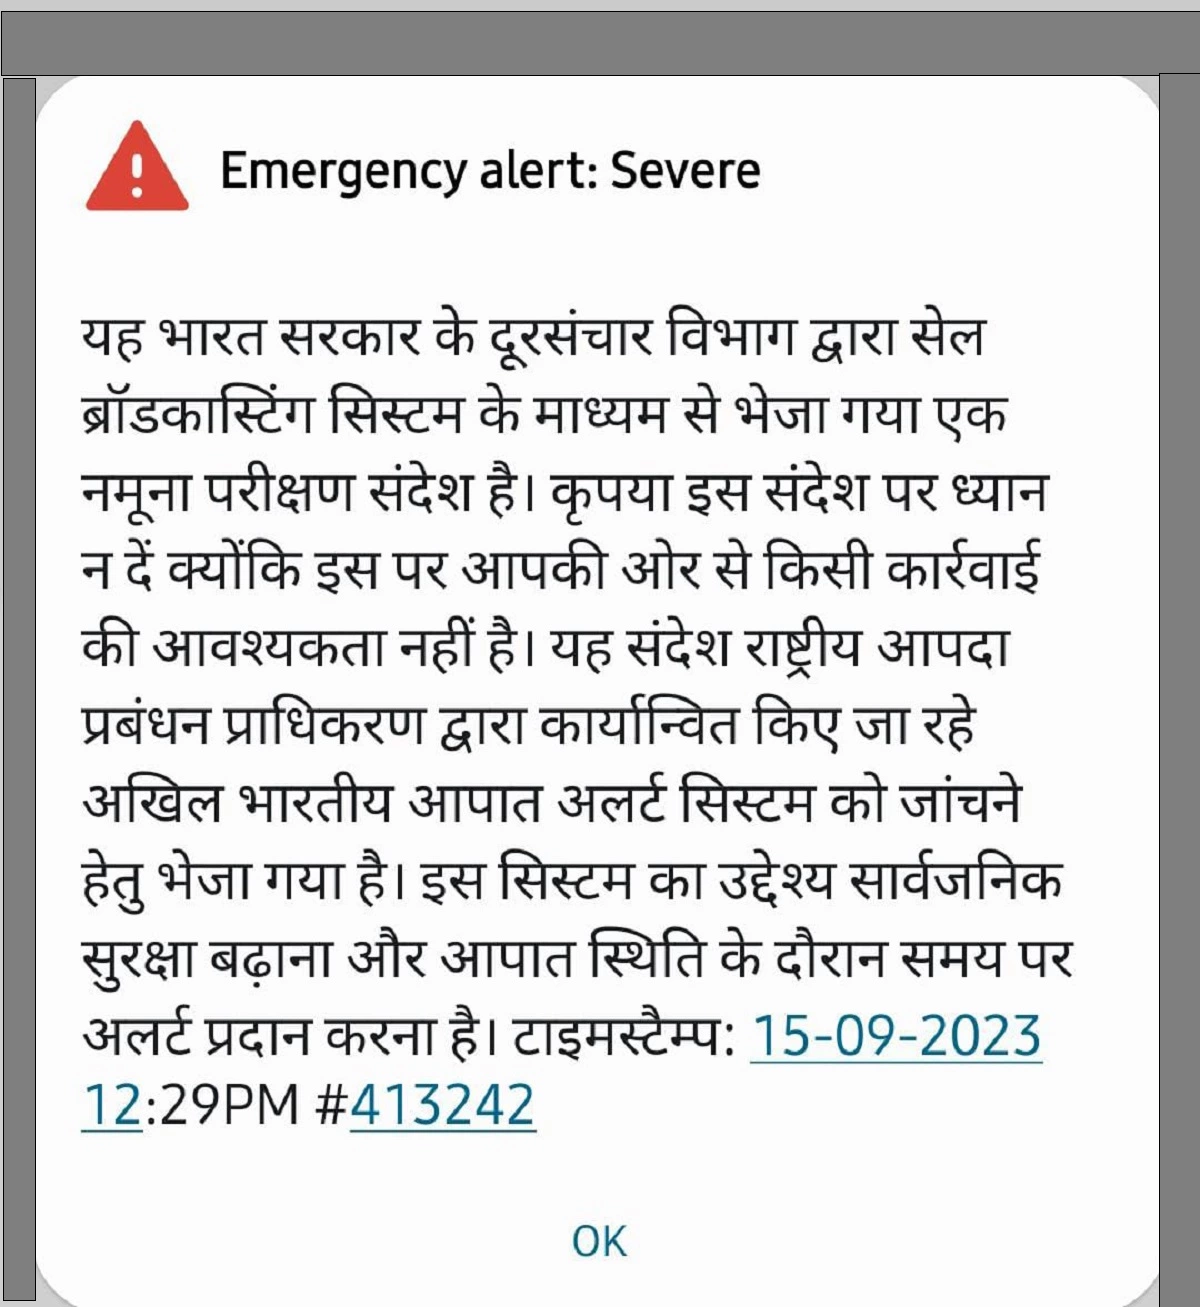 کیا آپ کے فون پر بھی آیا  ہے Emergency Alert Message، جانئے کیا ہے اس کا مطلب